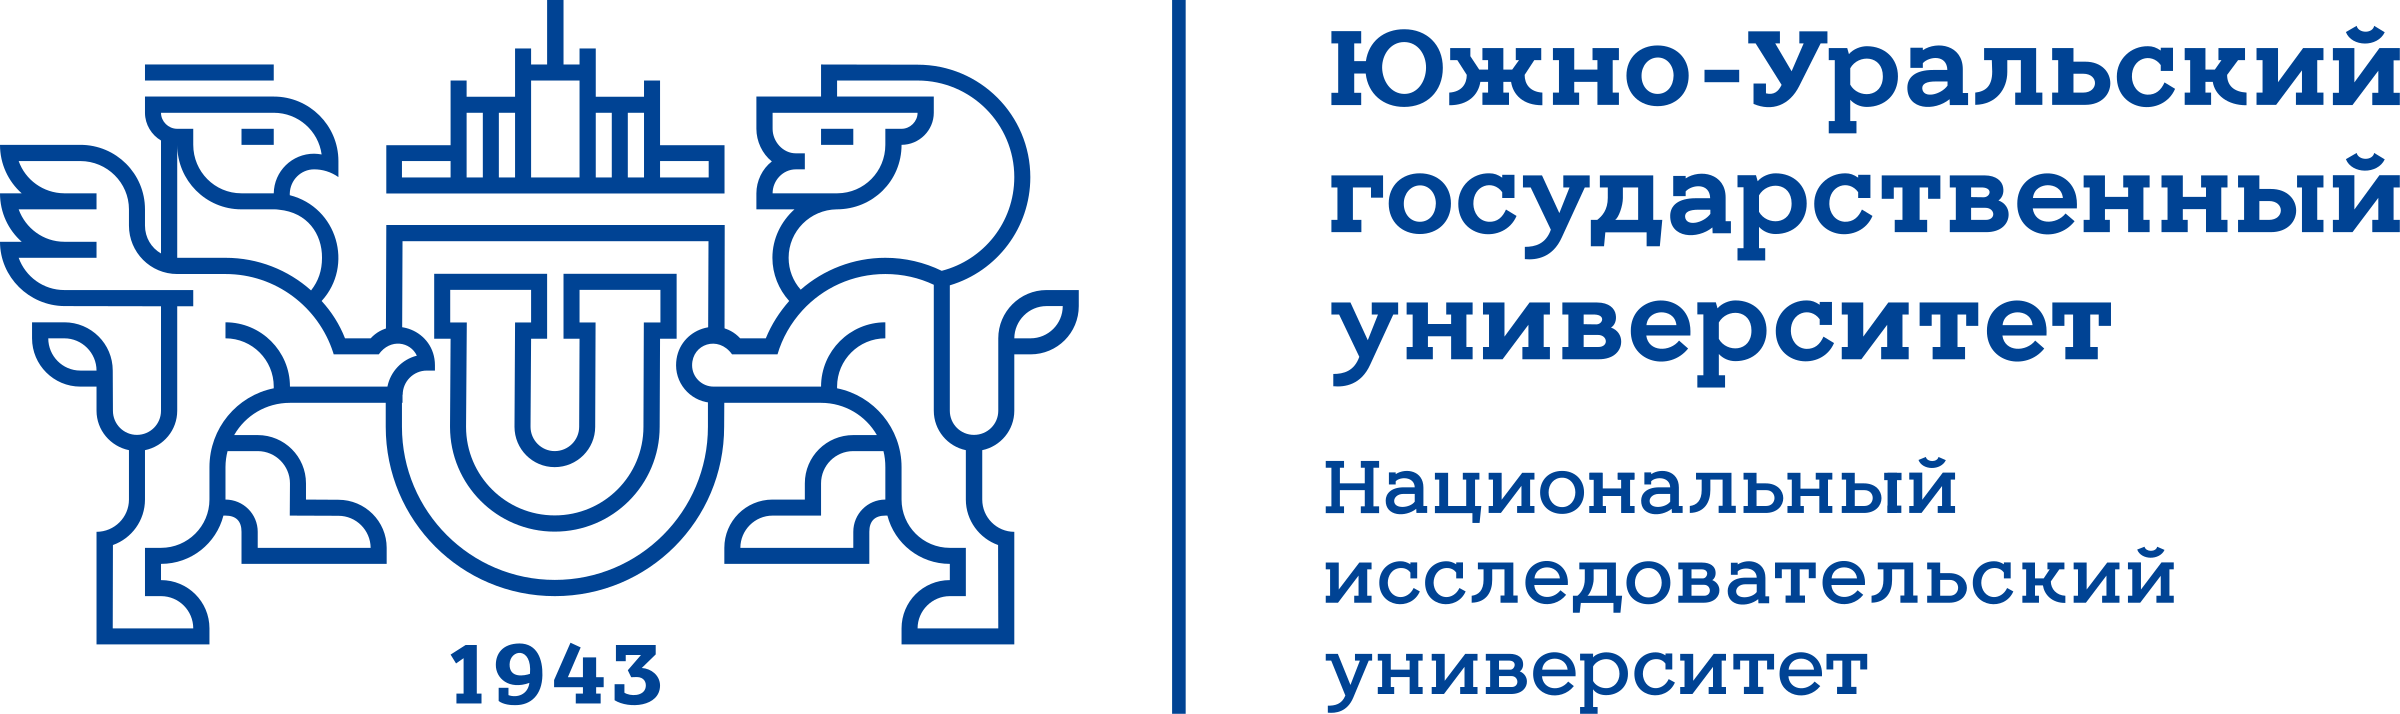 Логотип Южно-Уральского государственного университета